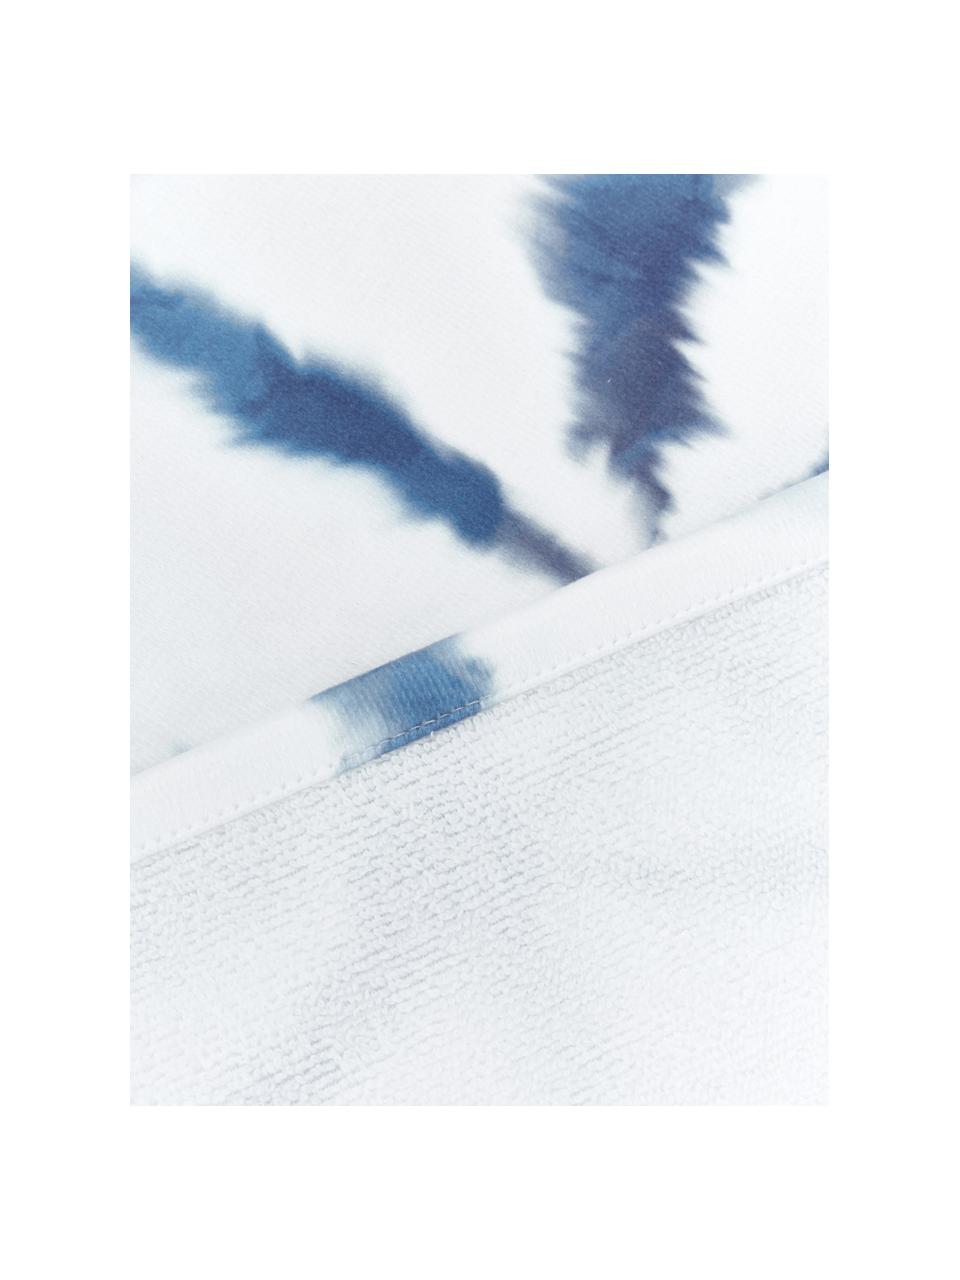 Leichtes Strandtuch Shibori mit Batikmuster, 55% Polyester, 45% Baumwolle
Sehr leichte Qualität, 340 g/m², Weiß, Blau, 70 x 150 cm